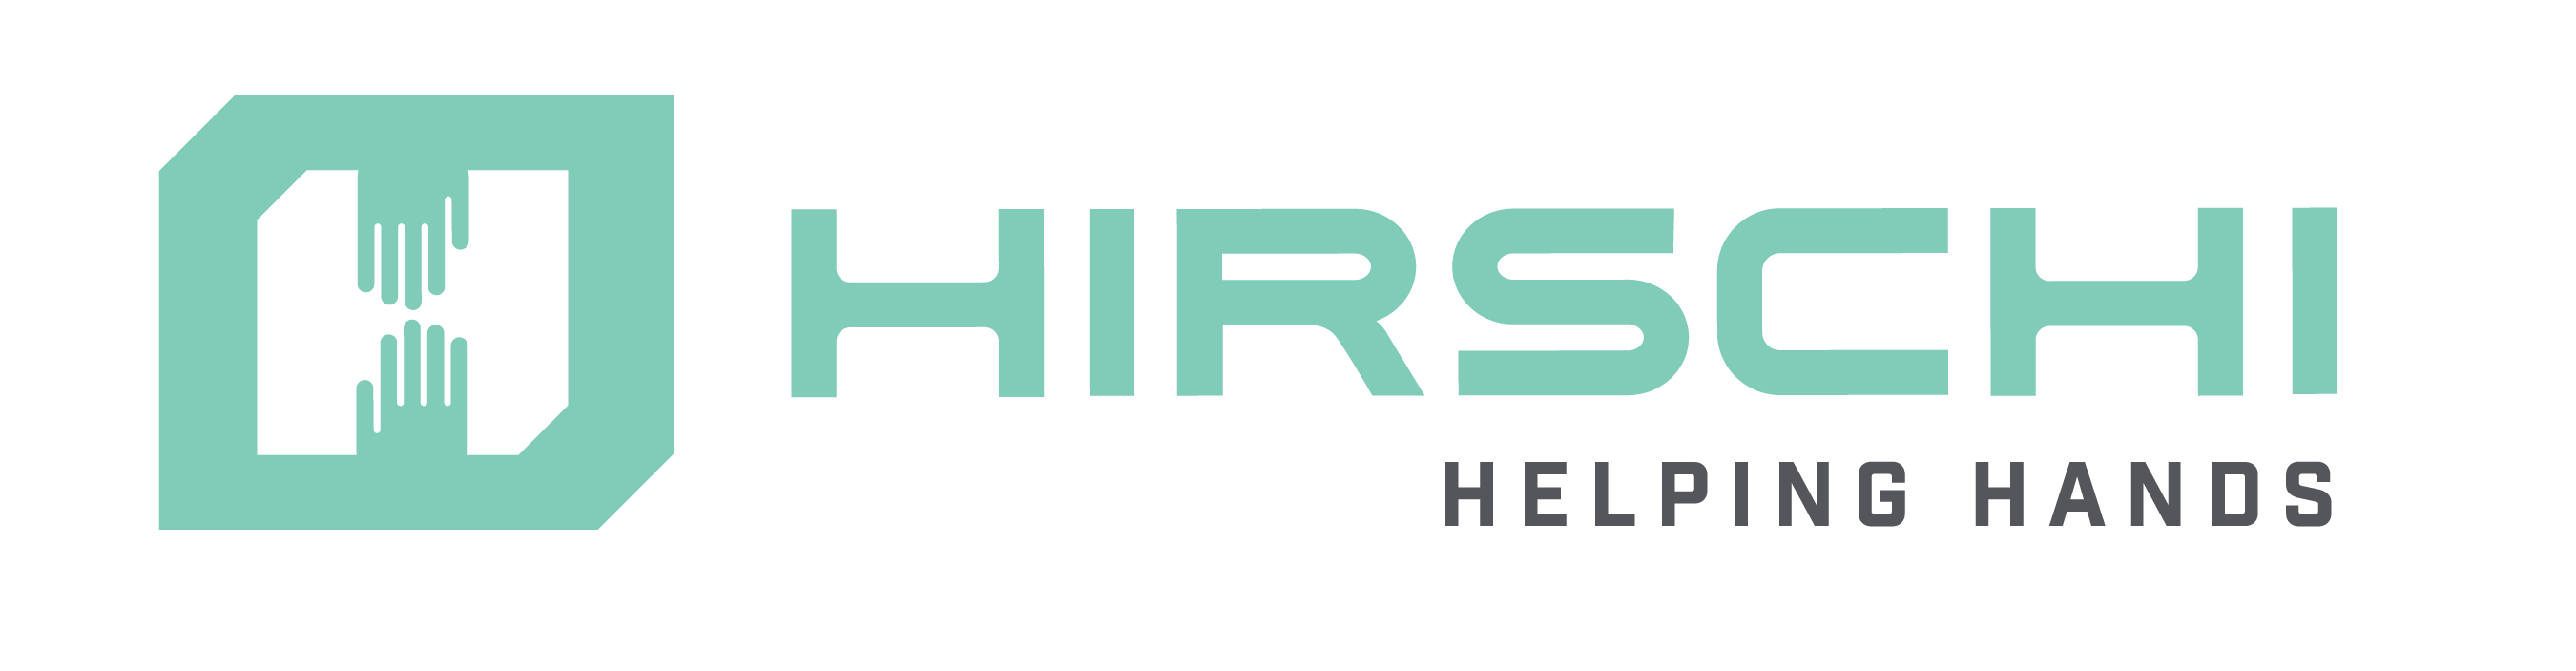 Helping Hands | Hirschi